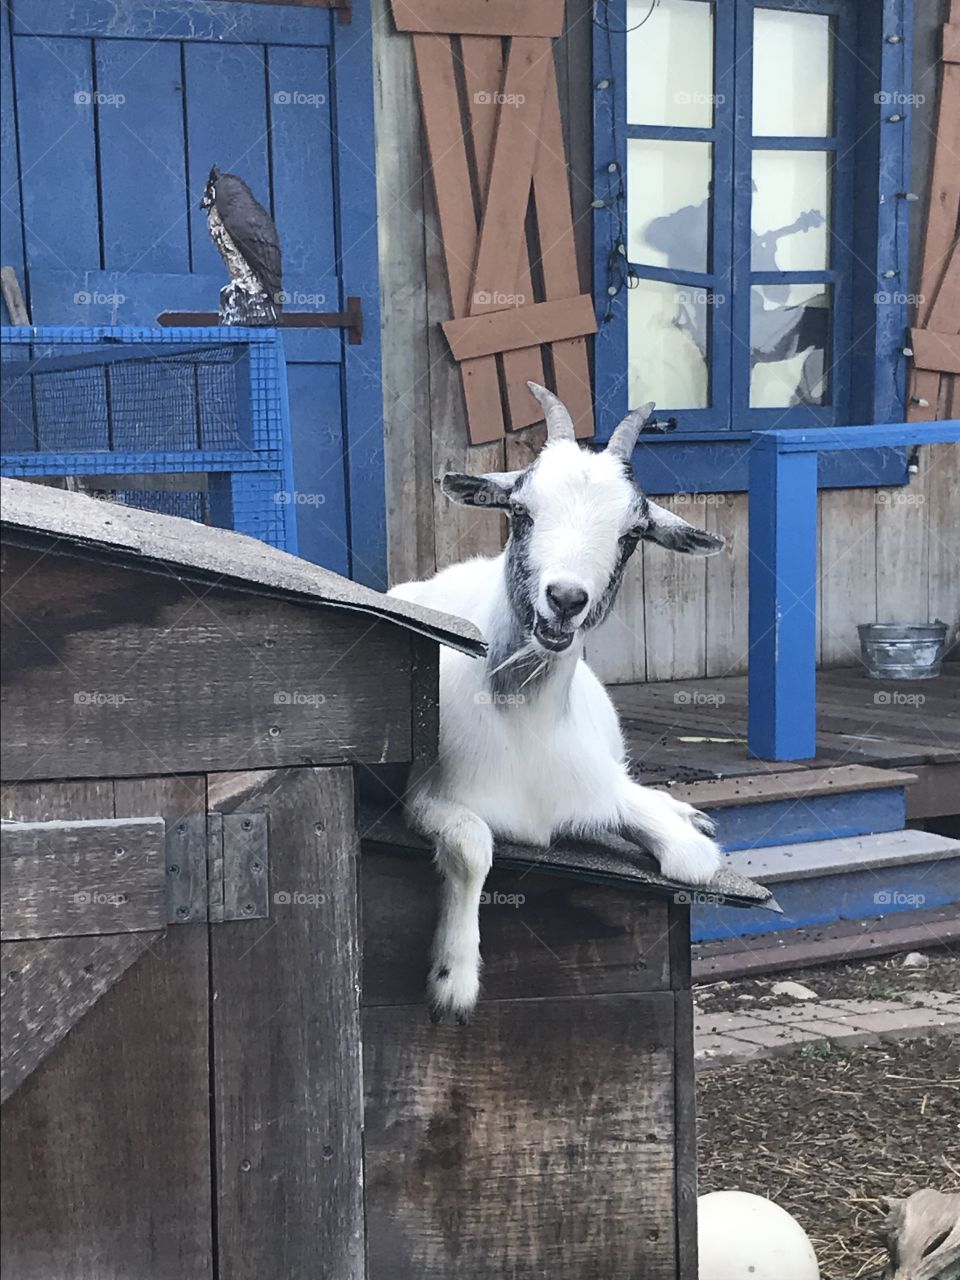 I still love goats 